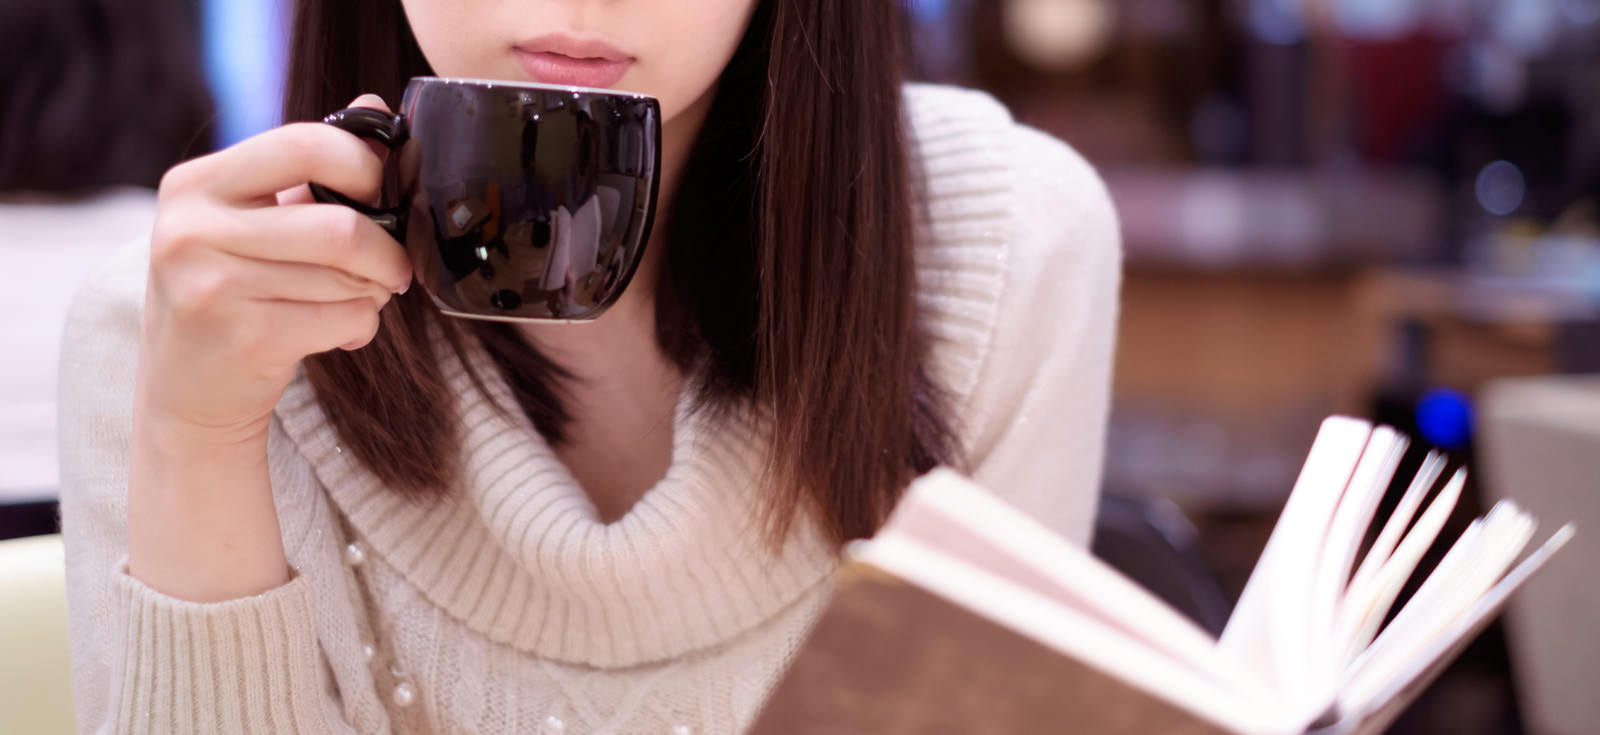 「カフェでコーヒーを飲みながら読書女子 | フリー素材のぱくたそ」の写真